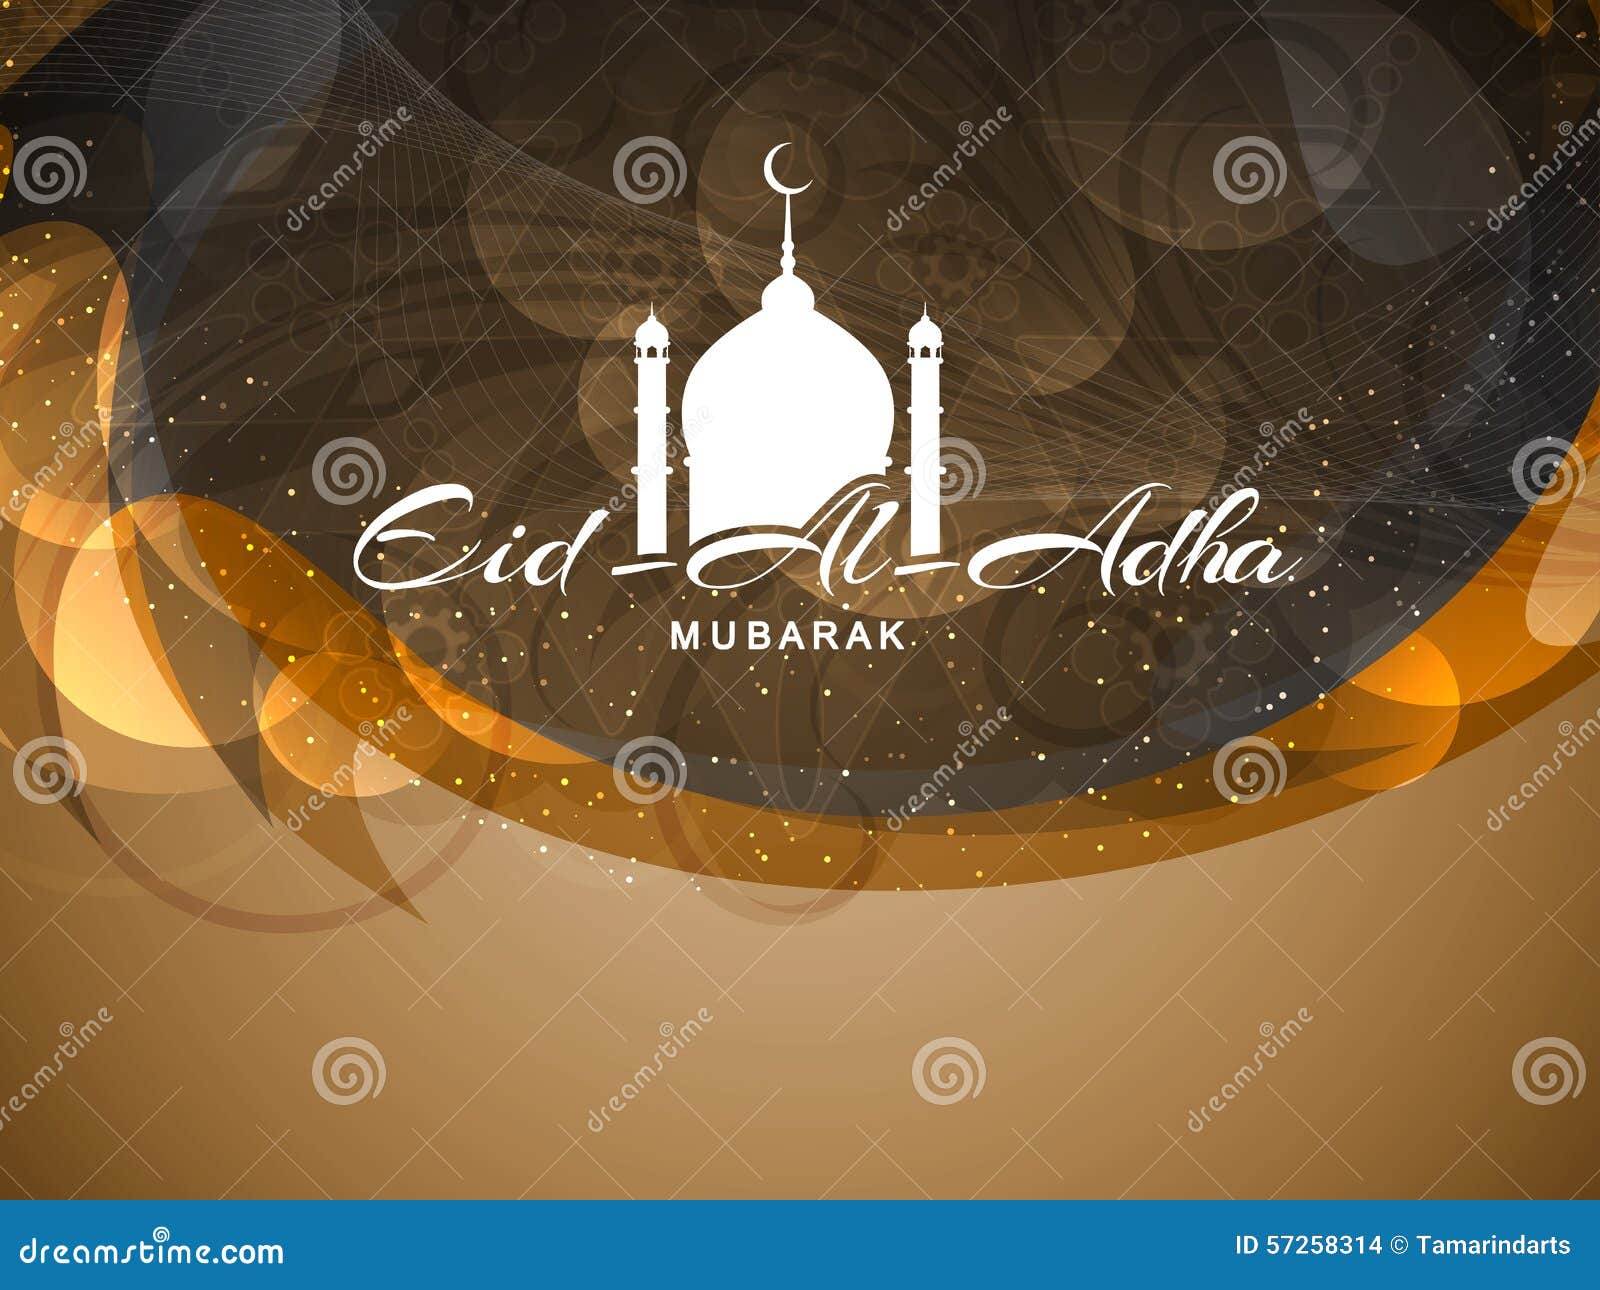 Chào mừng đến với Eid Al Adha Mubarak - ngày lễ quan trọng nhất của người Hồi giáo. Hãy cùng nhau tận hưởng niềm vui tràn đầy và một tâm trạng đầy cảm thông với những người xung quanh, và tỏ lời tri ân đến những gì mà cuộc đời đã ban tặng cho ta. 